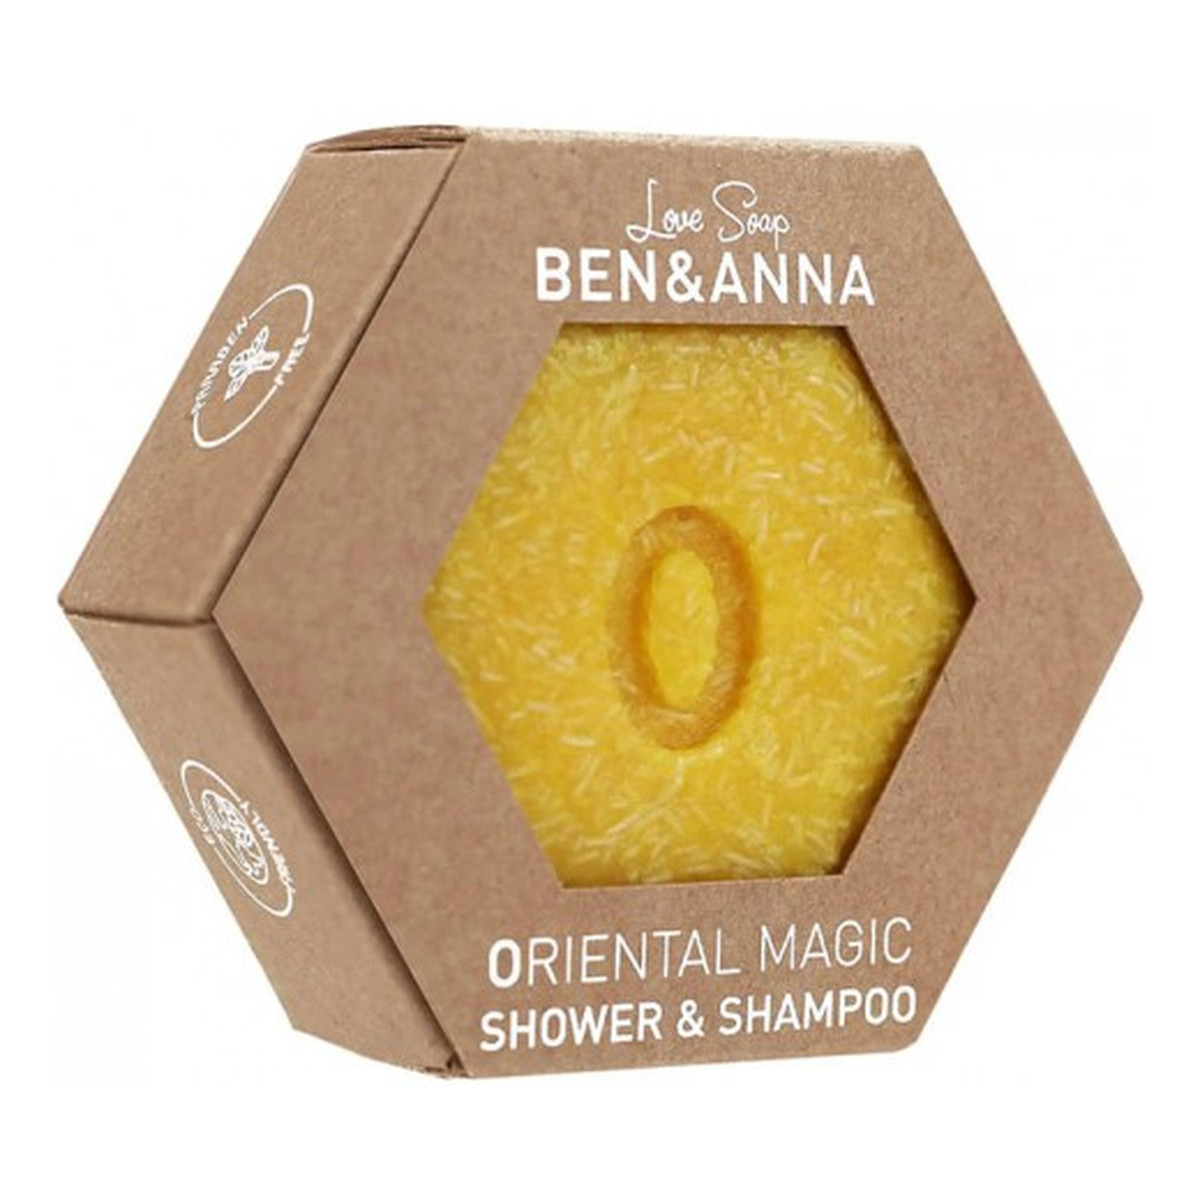 Ben&Anna Shower & Shampoo szampon i Żel pod prysznic w kostce oriental magic 60g